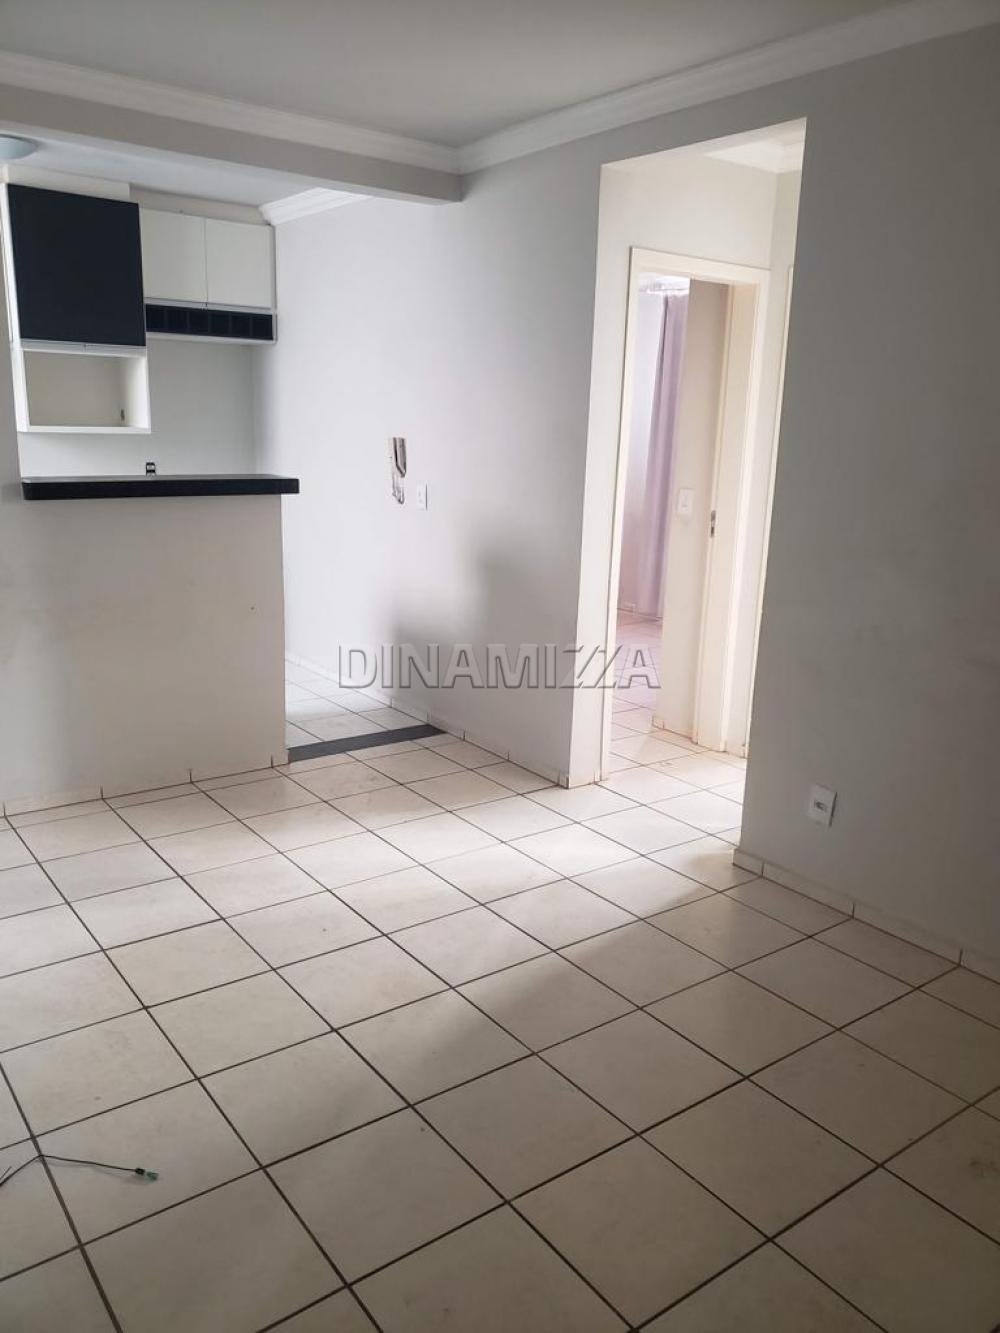 Comprar Apartamento / Padrão em Uberaba R$ 160.000,00 - Foto 11